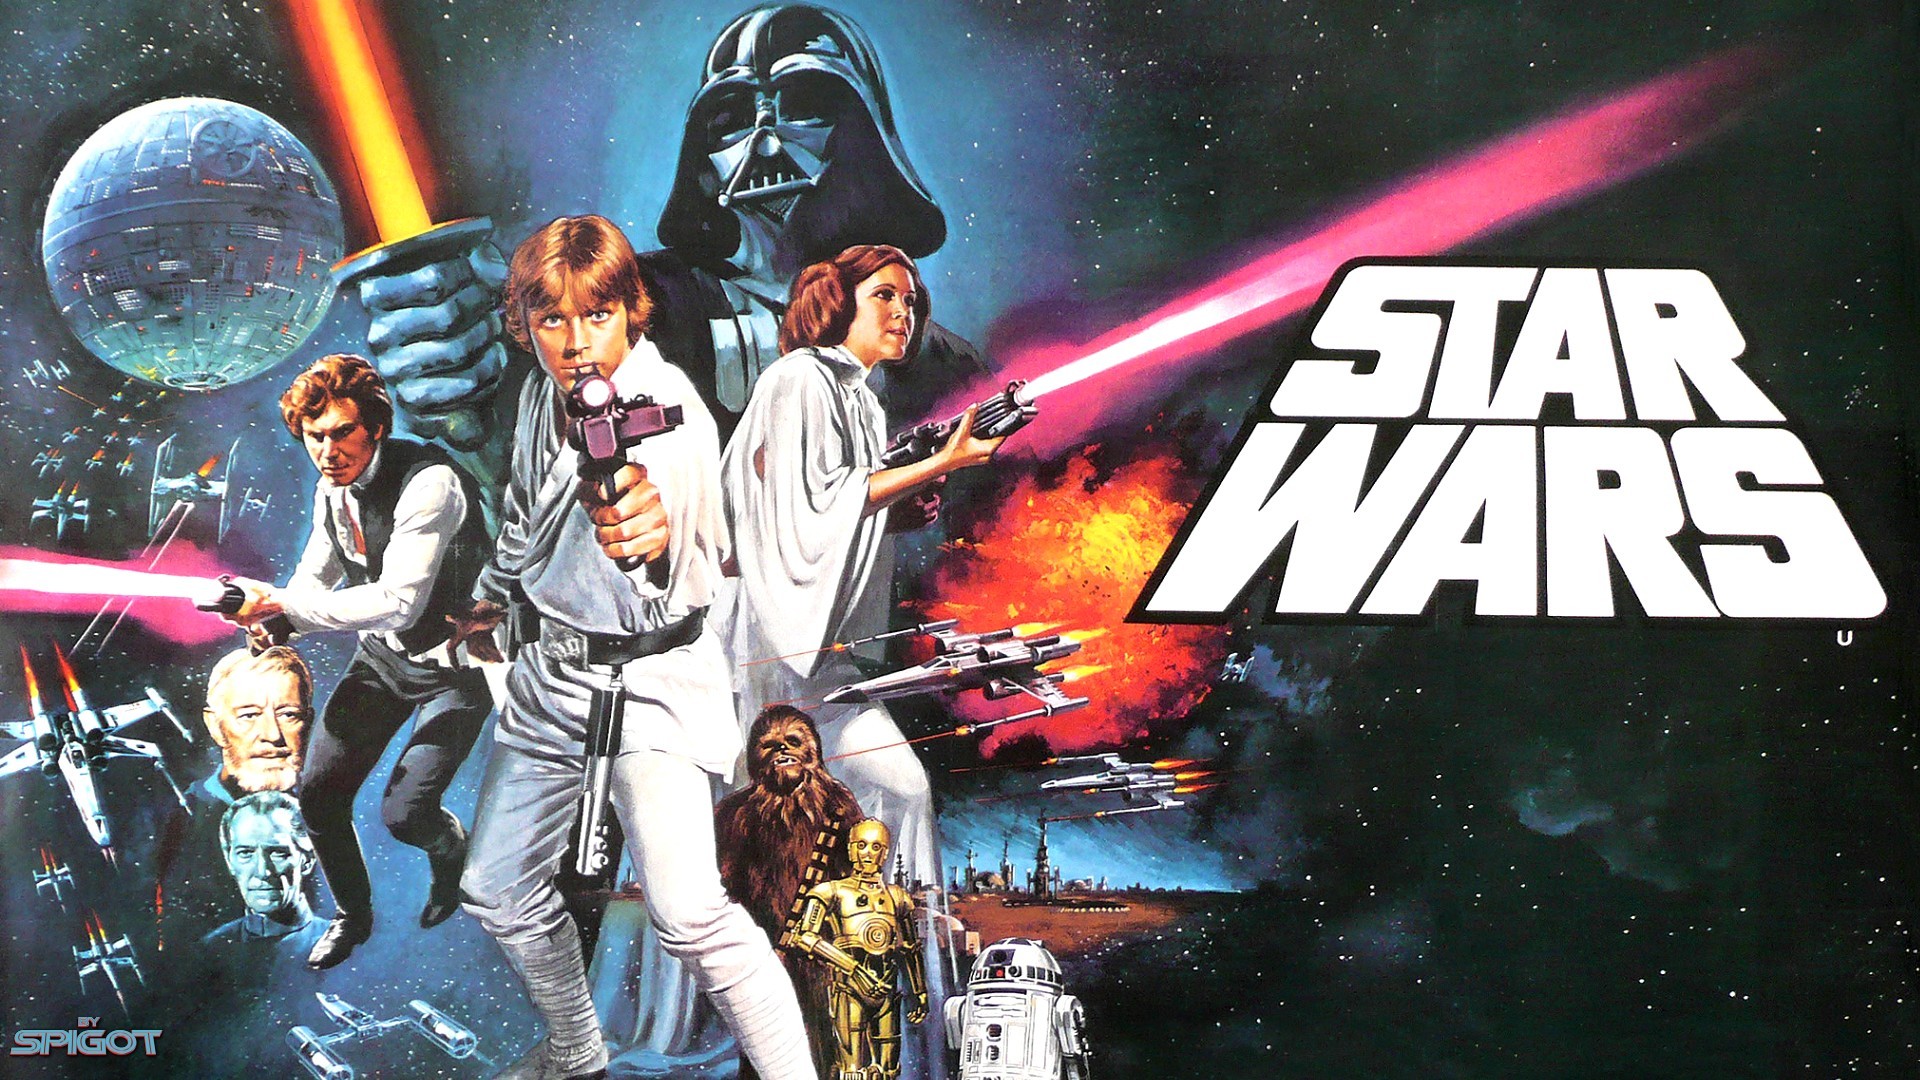 Star Wars Original Trilogy HD Wallpaper | 1920x1080 | ID:58125